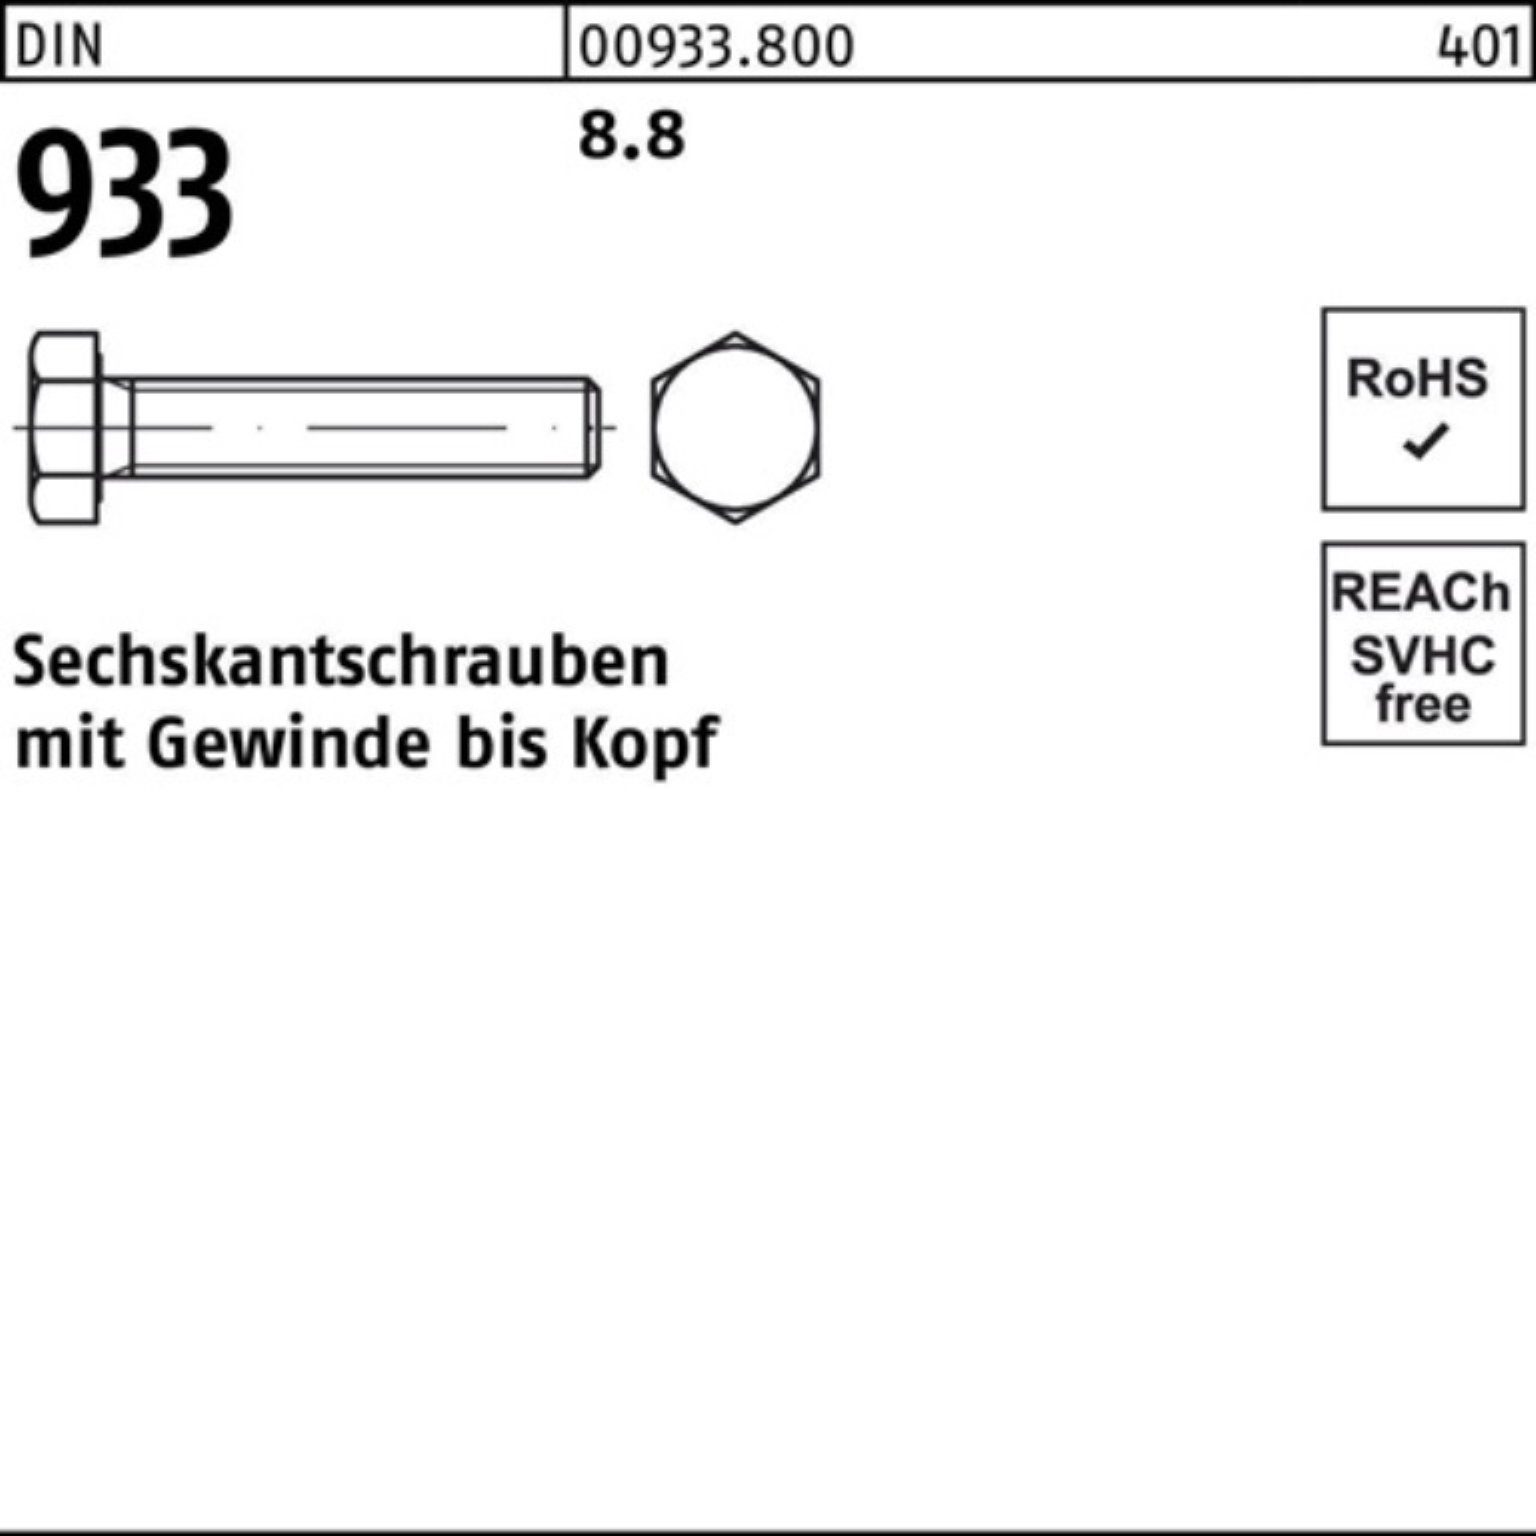 Reyher Sechskantschraube 100er Pack 933 45 DIN Sechskantschraube DIN VG 10 8.8 Stück M27x 933